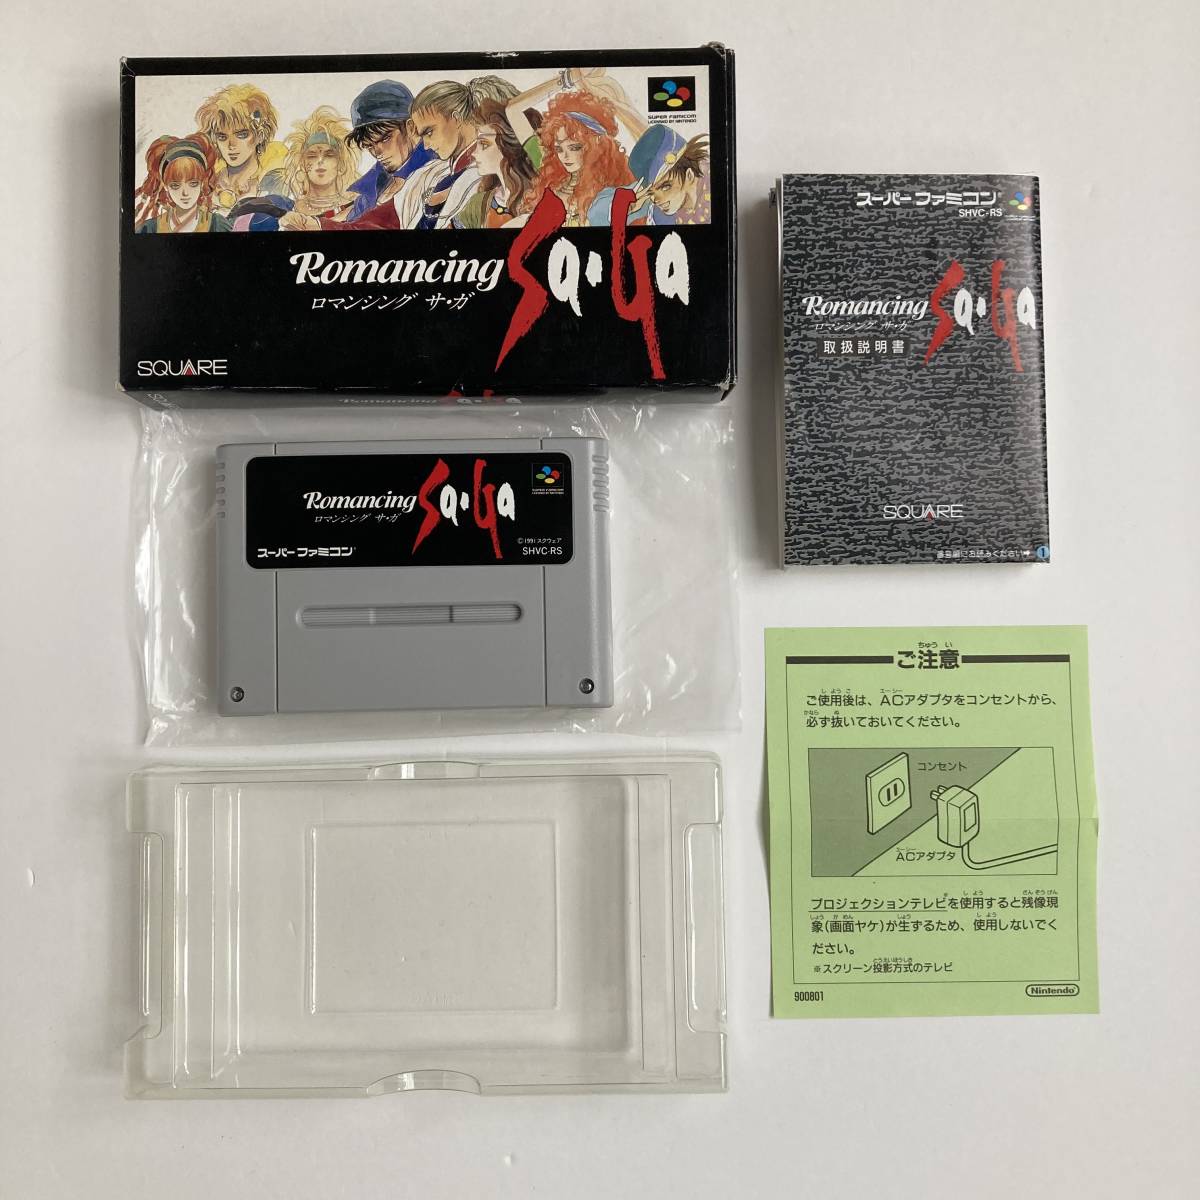 スーパーファミコン ロマンシング サガ 1 2 3 セット/ Lot 3 Romancing Saga 1 2 3 I II III SNES SFC Nintendo Famicom Square Enix Japan